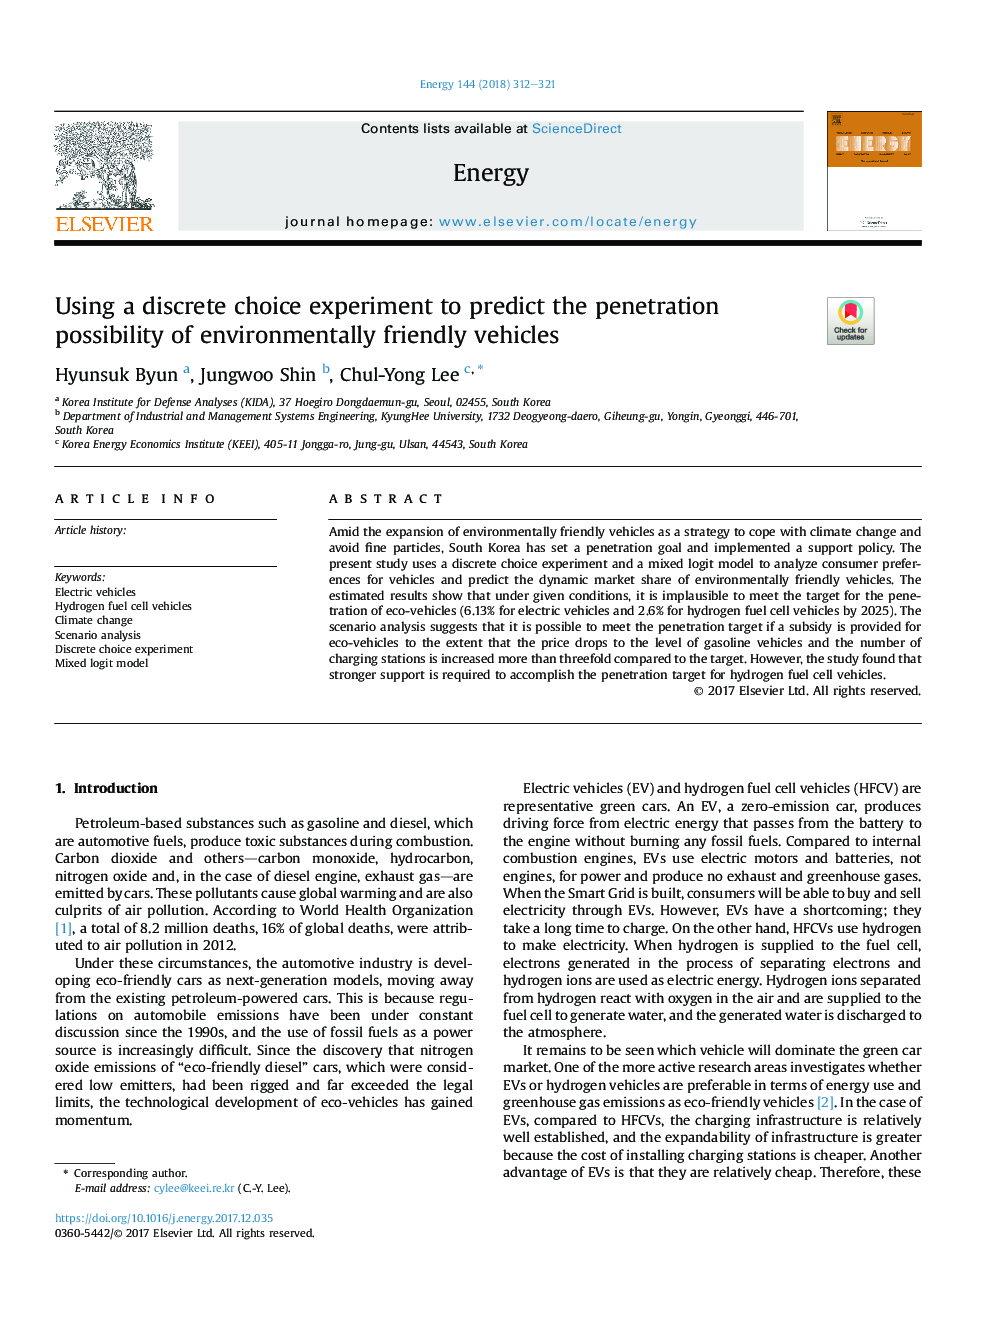 با استفاده از یک آزمایش انتخابی گسسته برای پیش بینی احتمال نفوذ وسایل نقلیه سازگار با محیط زیست 